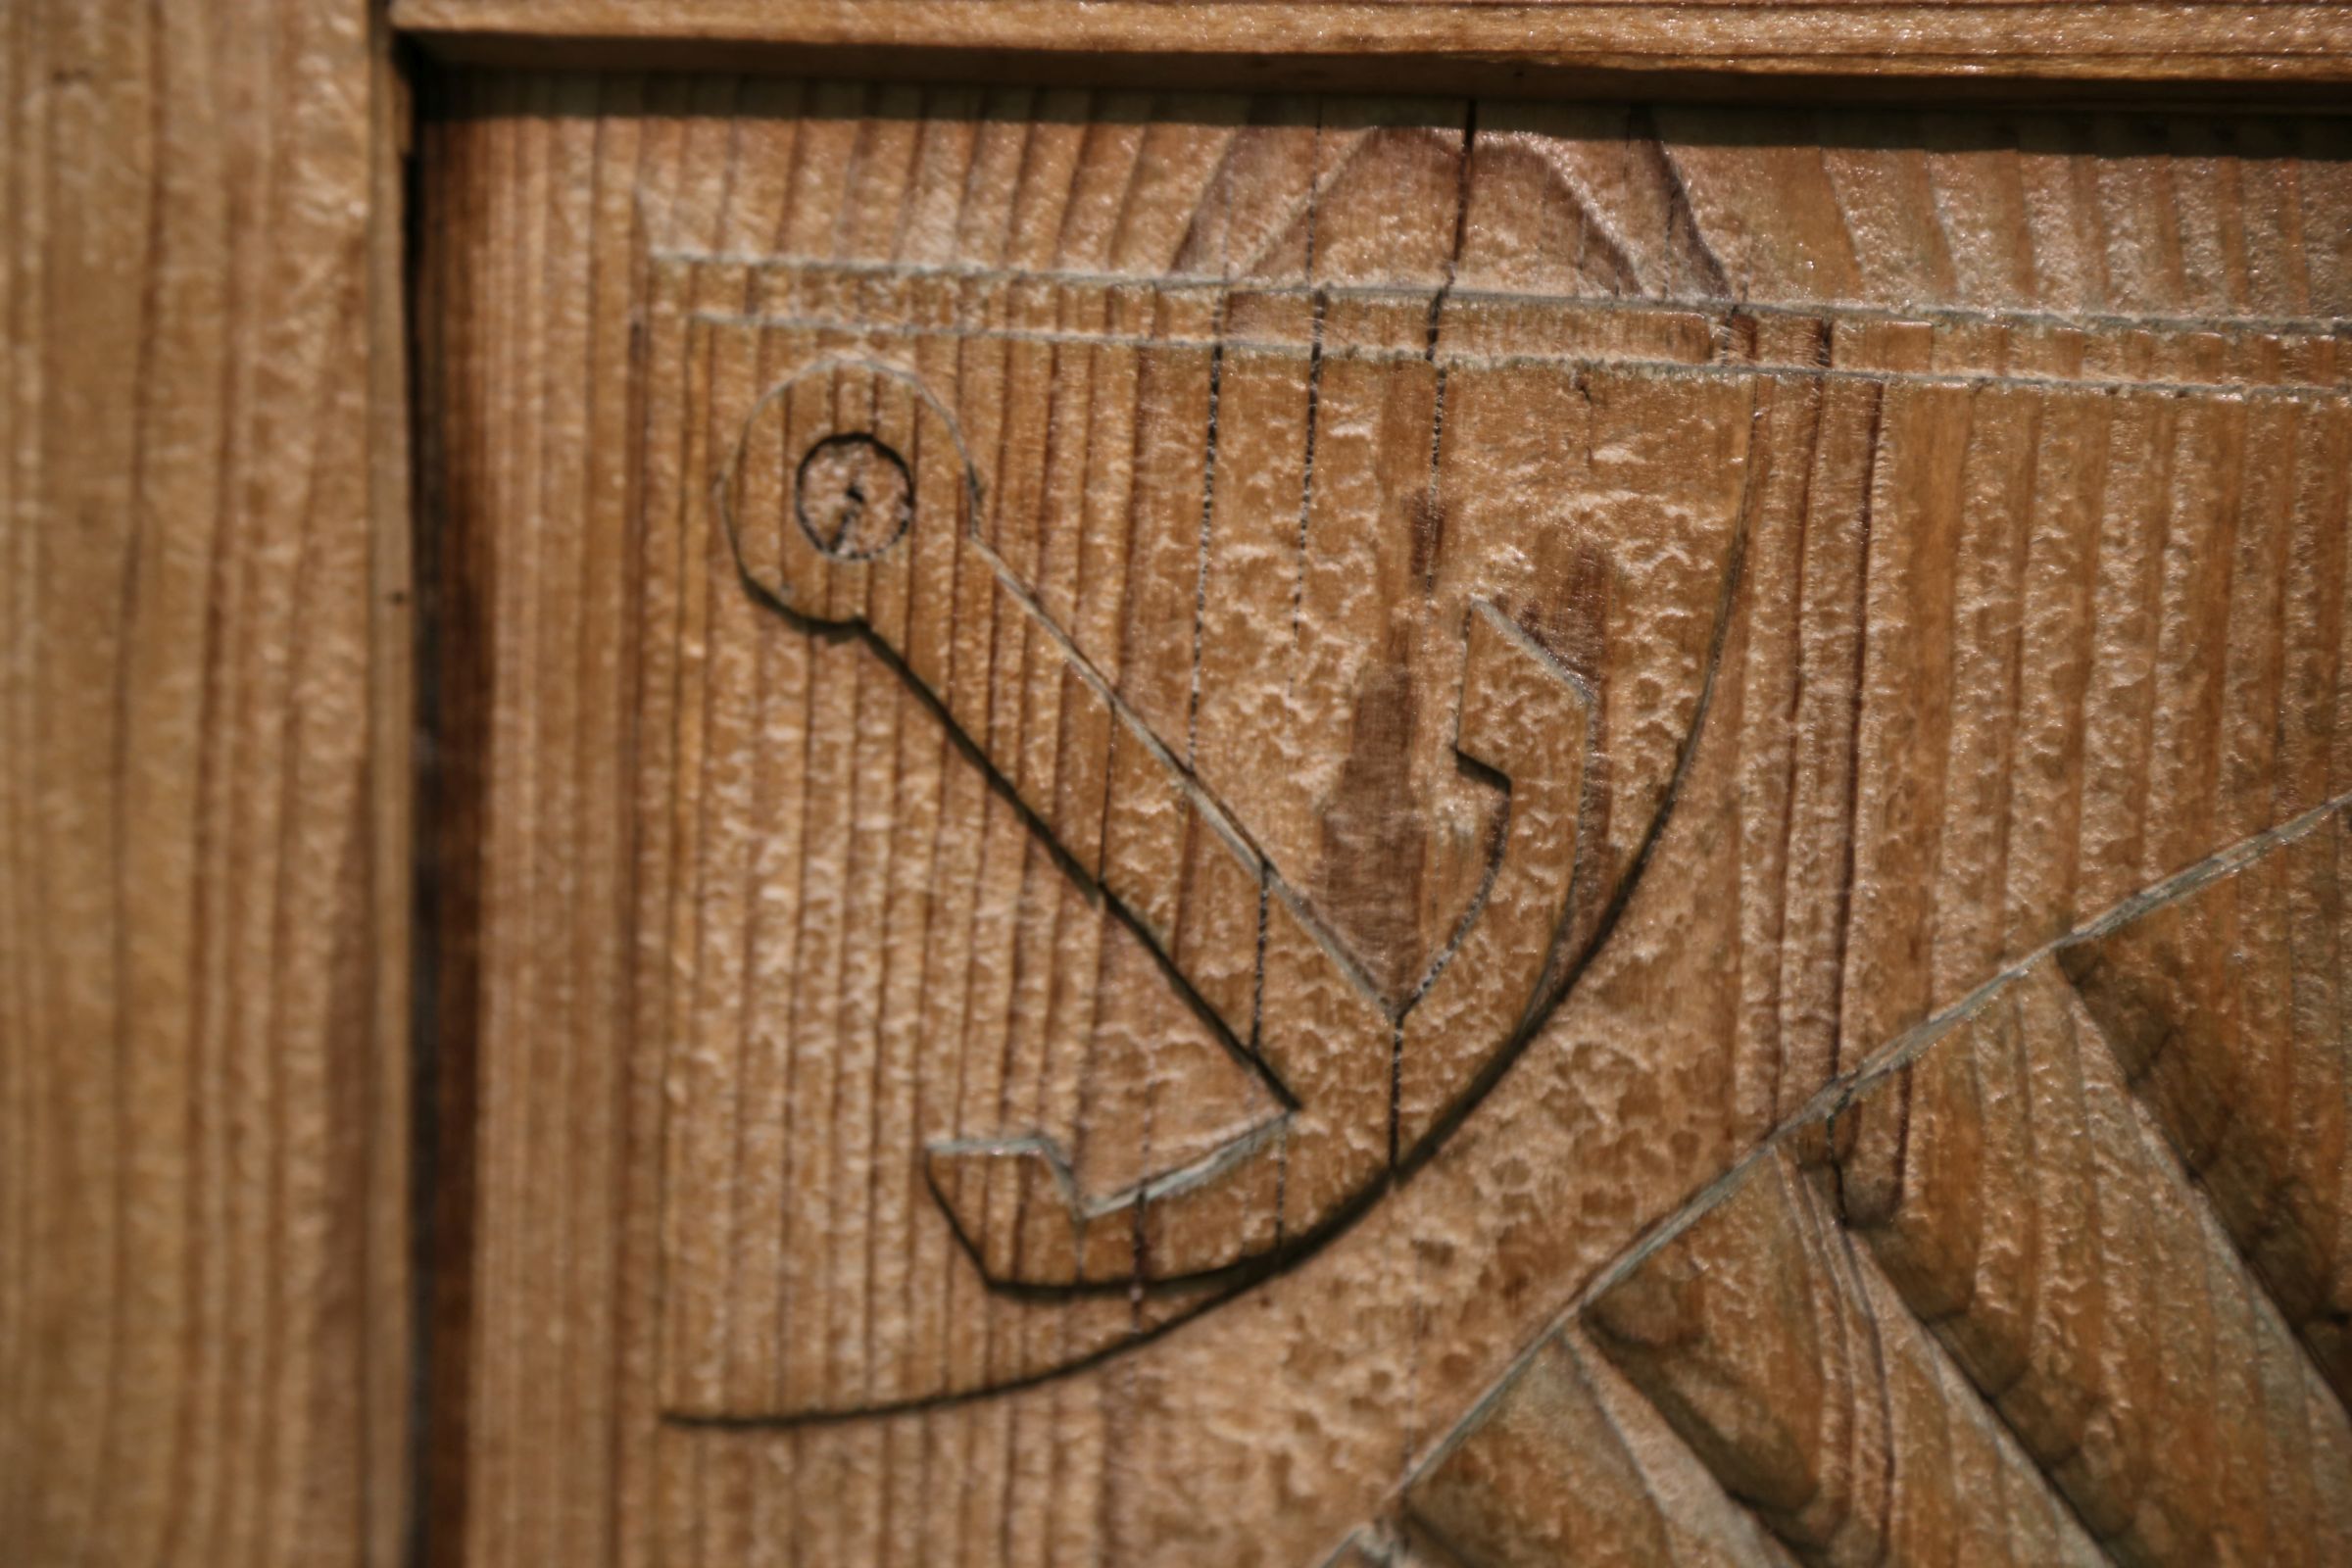 Detajl vrat z razstave Vrata. Prostorski in simbolni prehodi življenja.